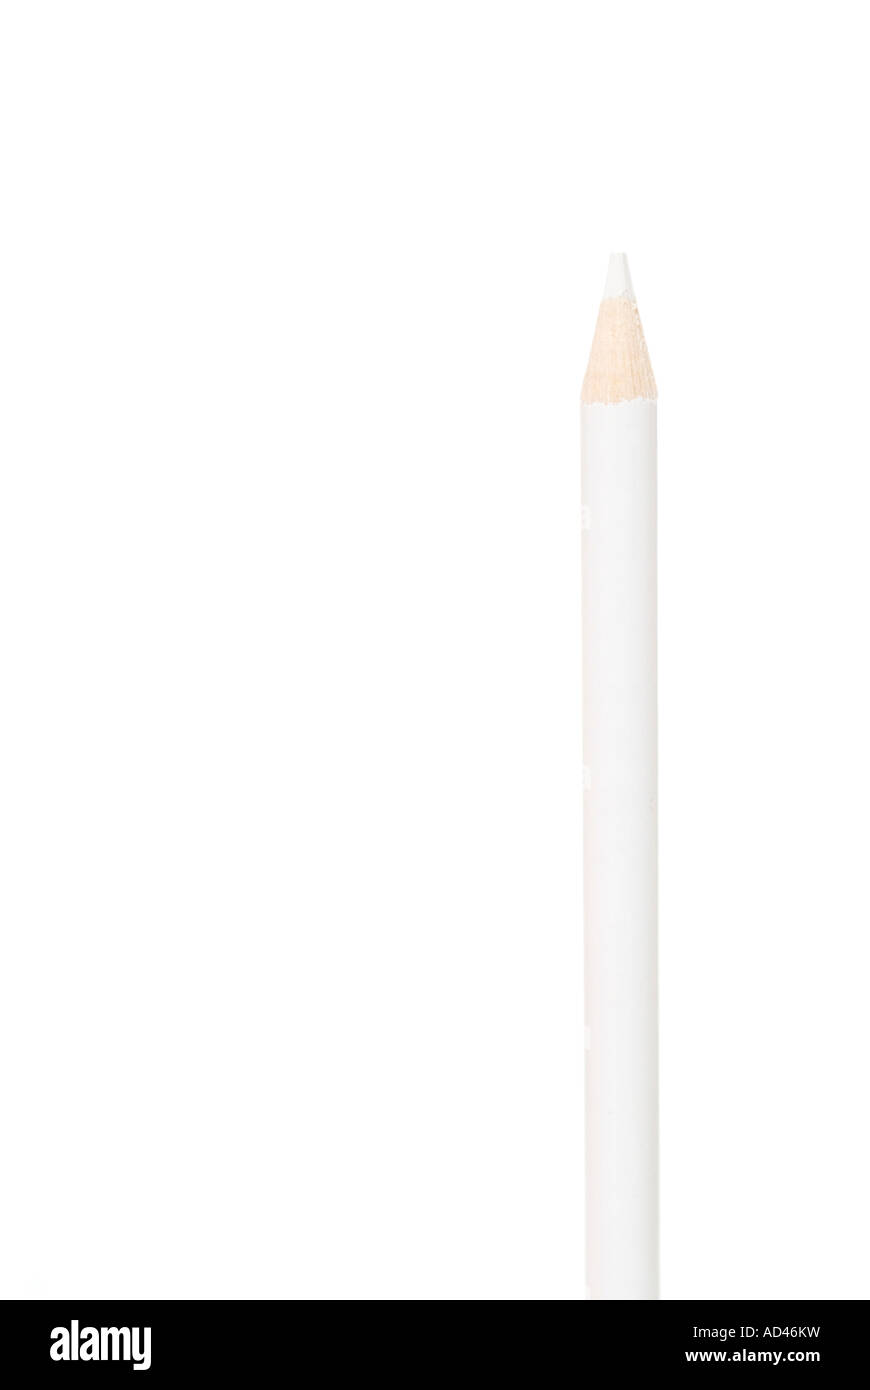 White pencil on a white background Stock Photo